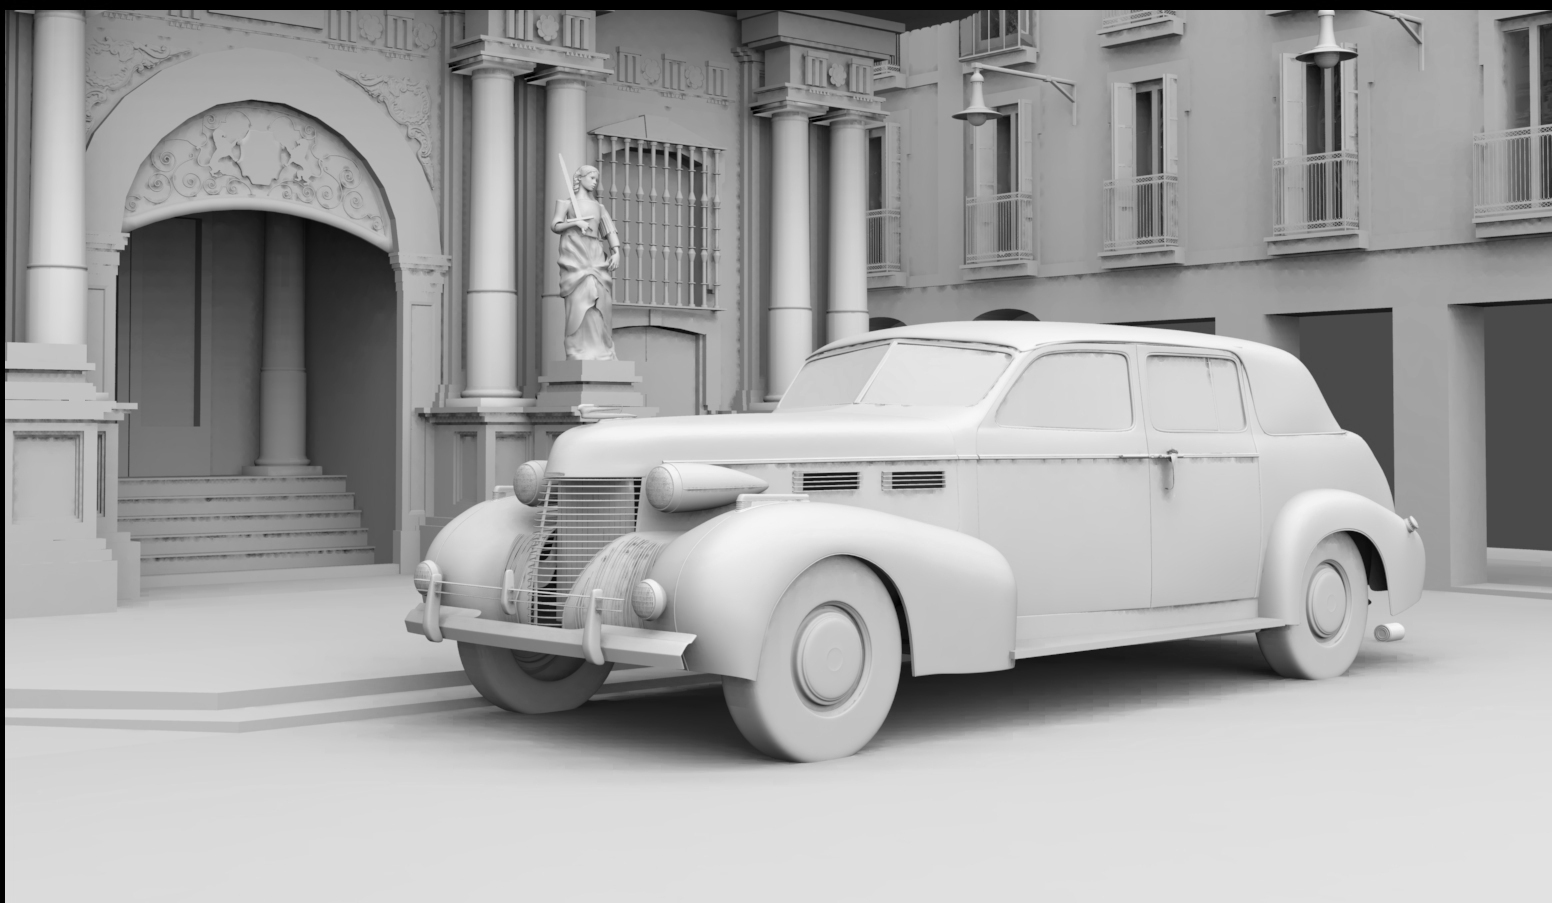 A classic wedding car WIP